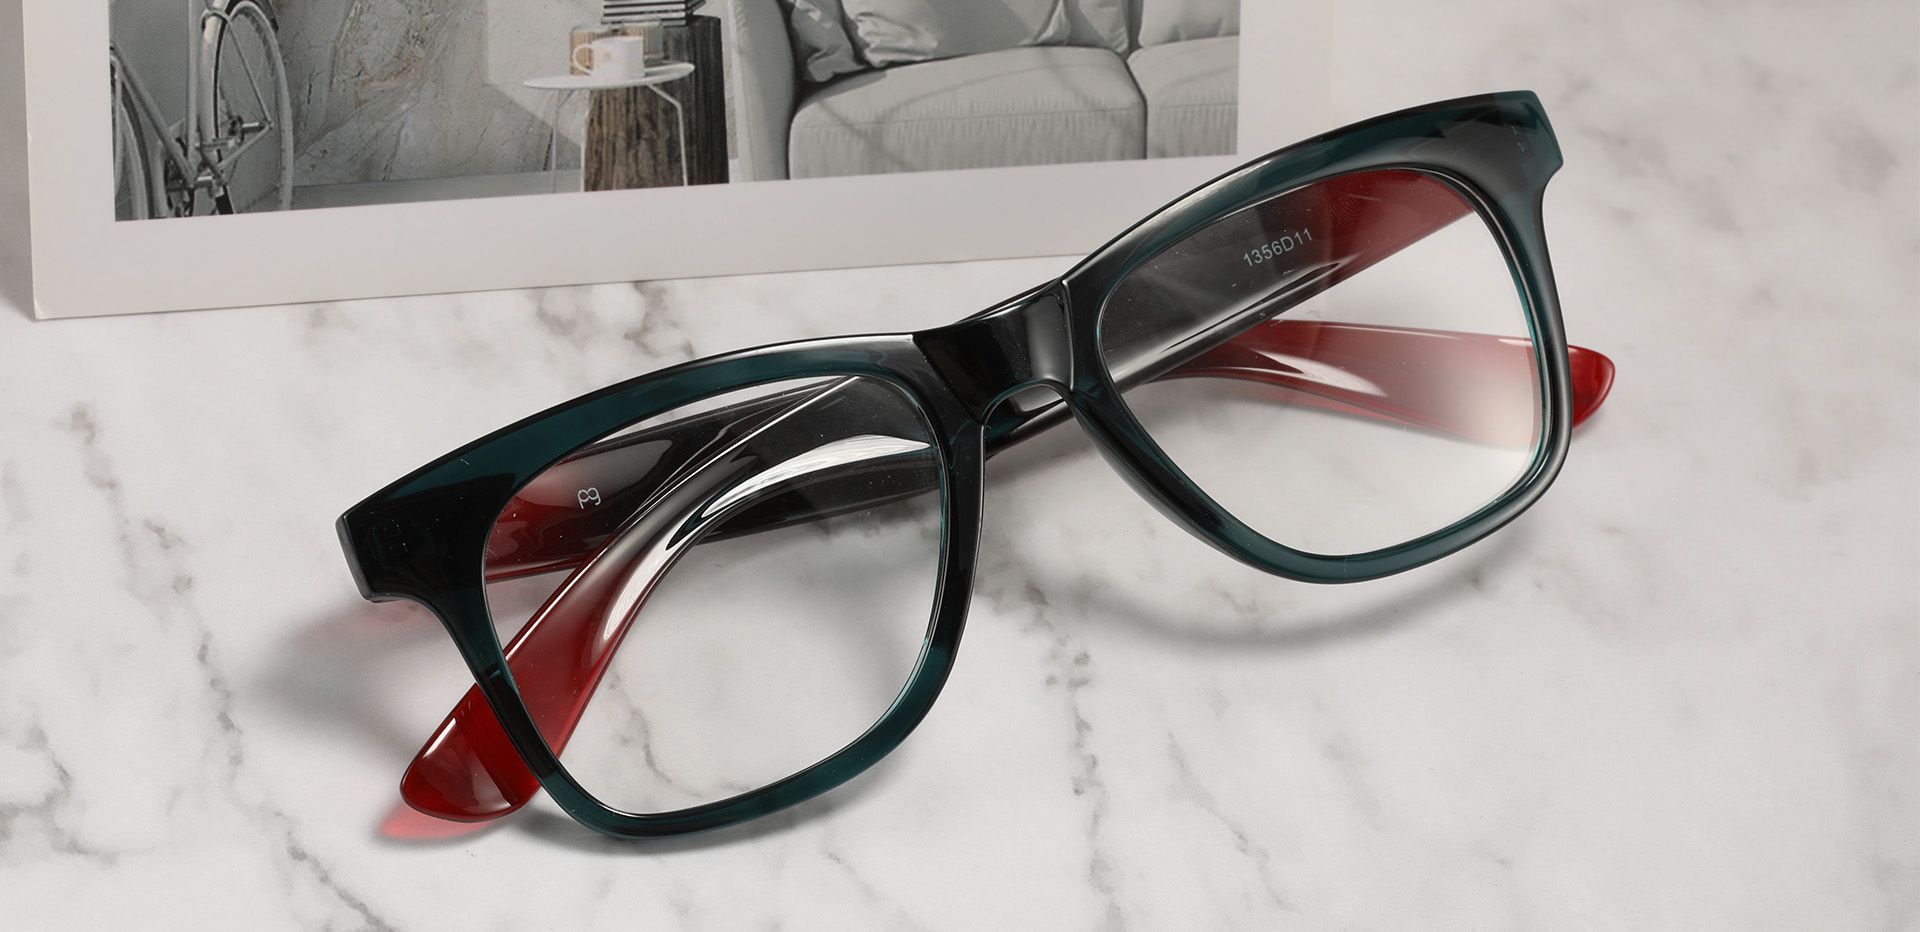 Hurley Square Eyeglasses Frame - Green, Men's Eyeglasses